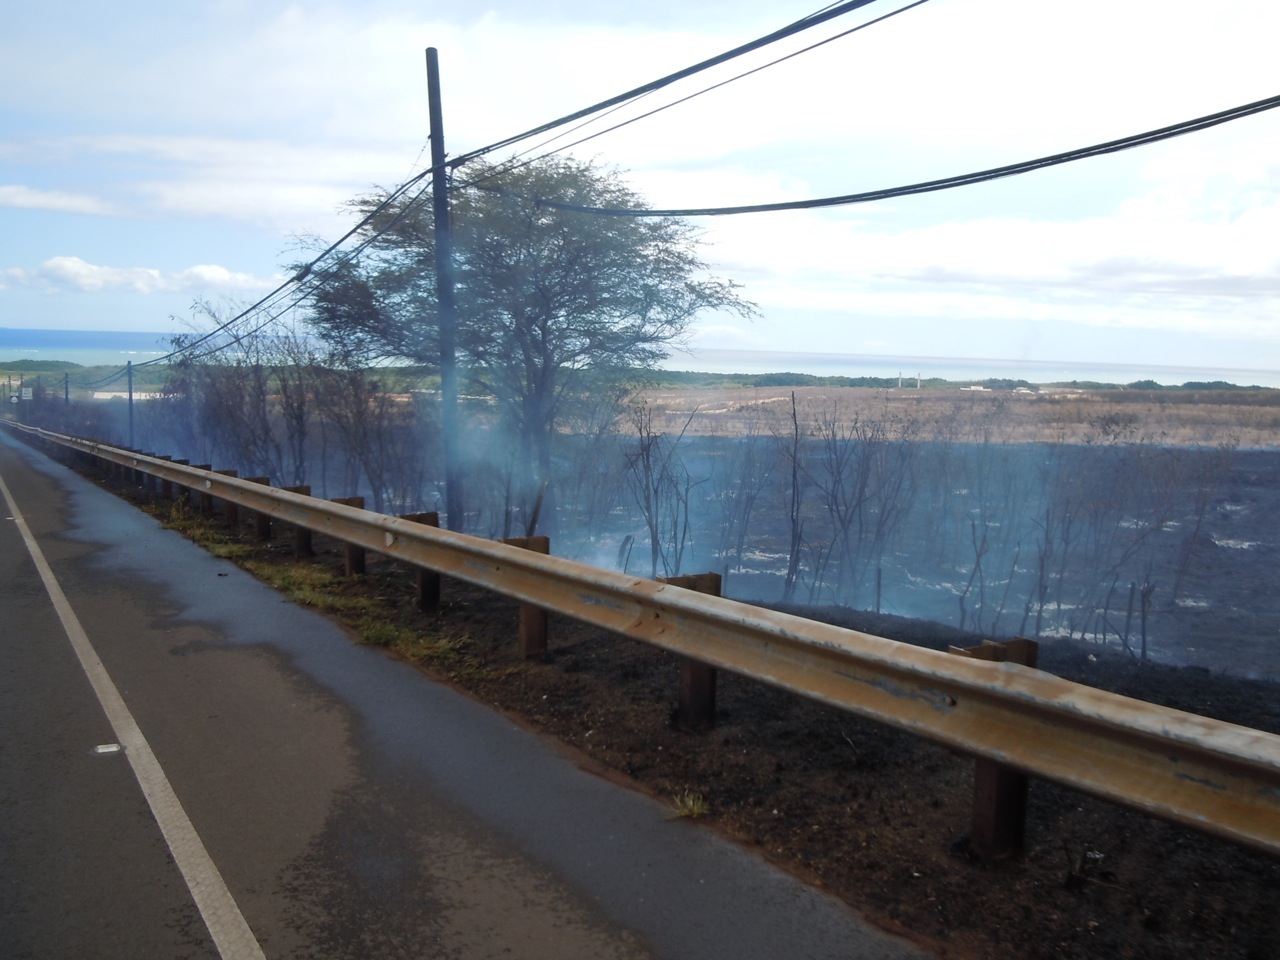 Two Brush Fires Blazed on Molokai